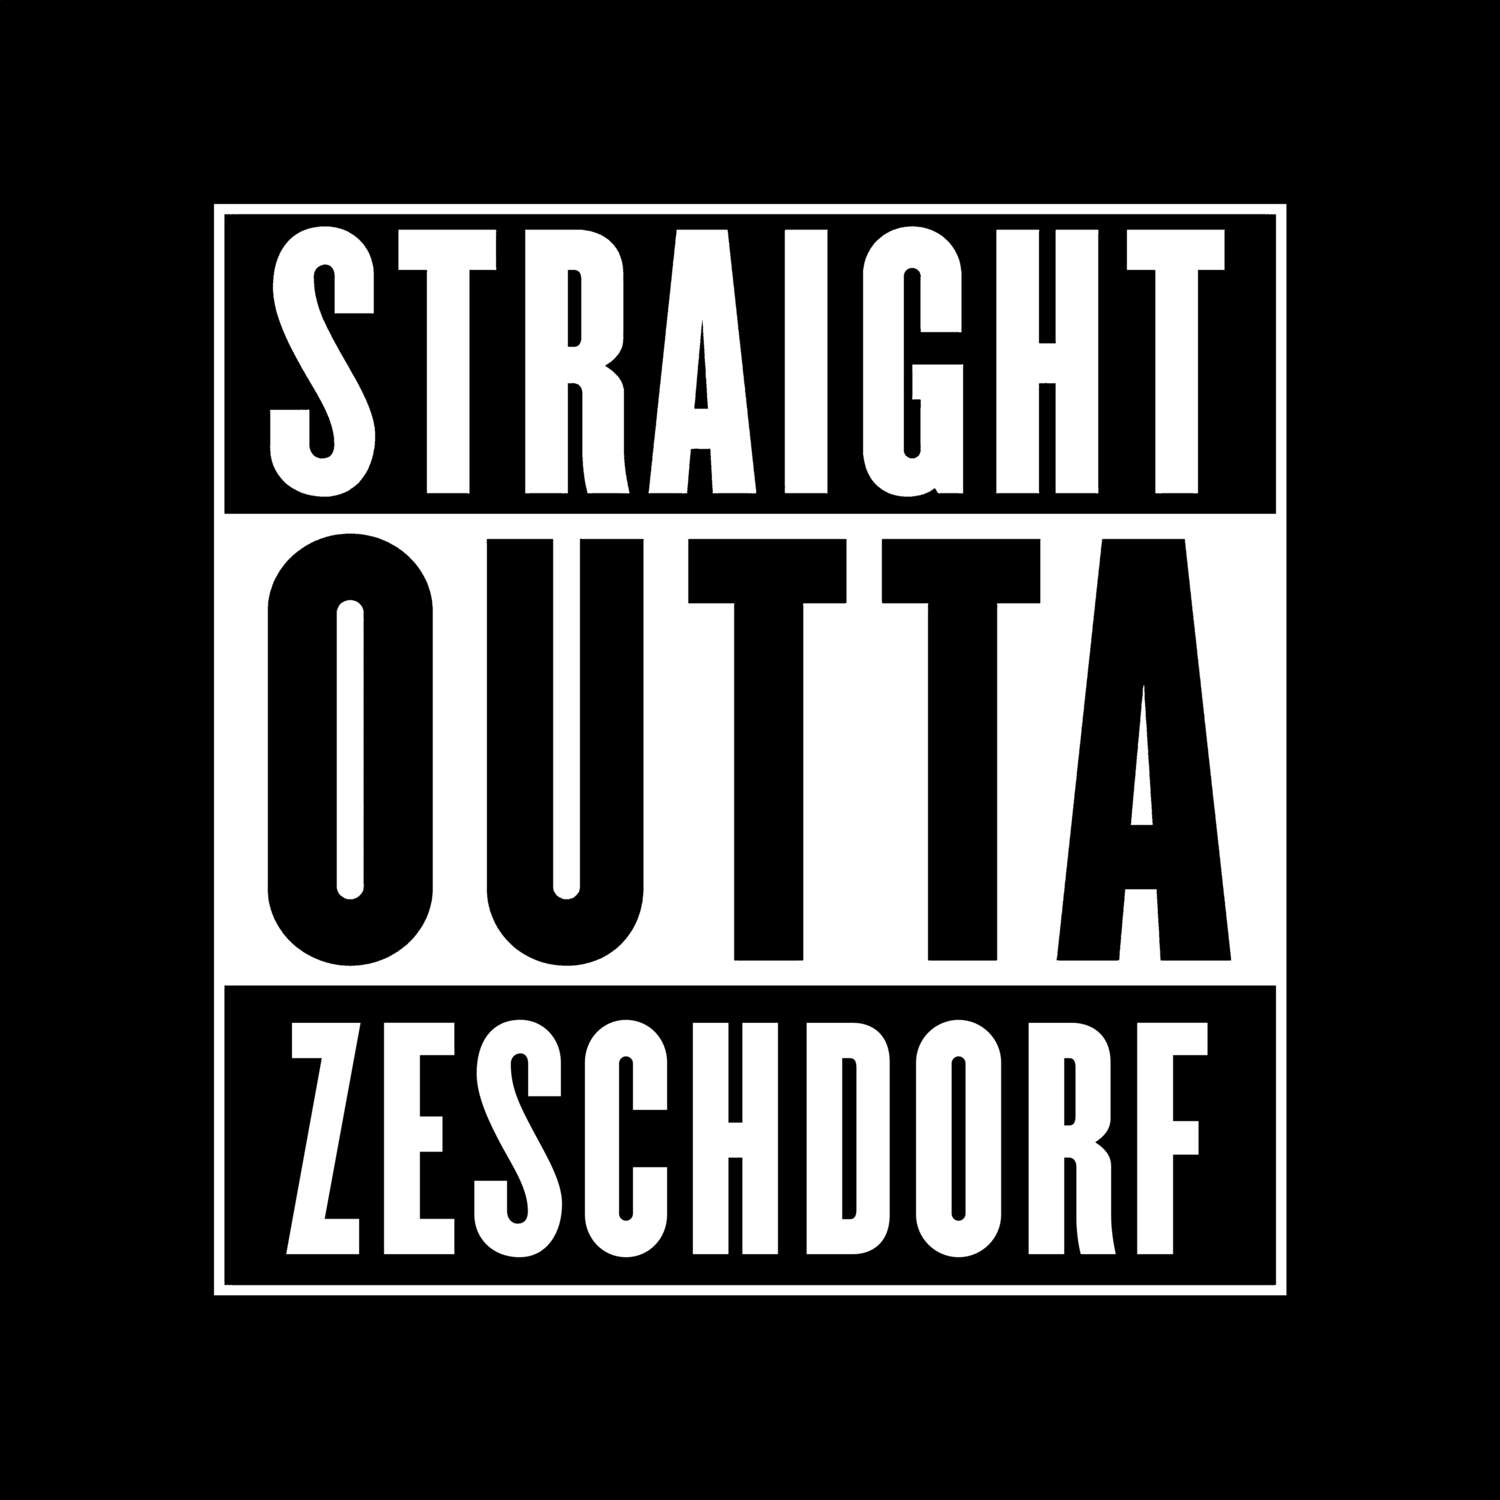 Zeschdorf T-Shirt »Straight Outta«